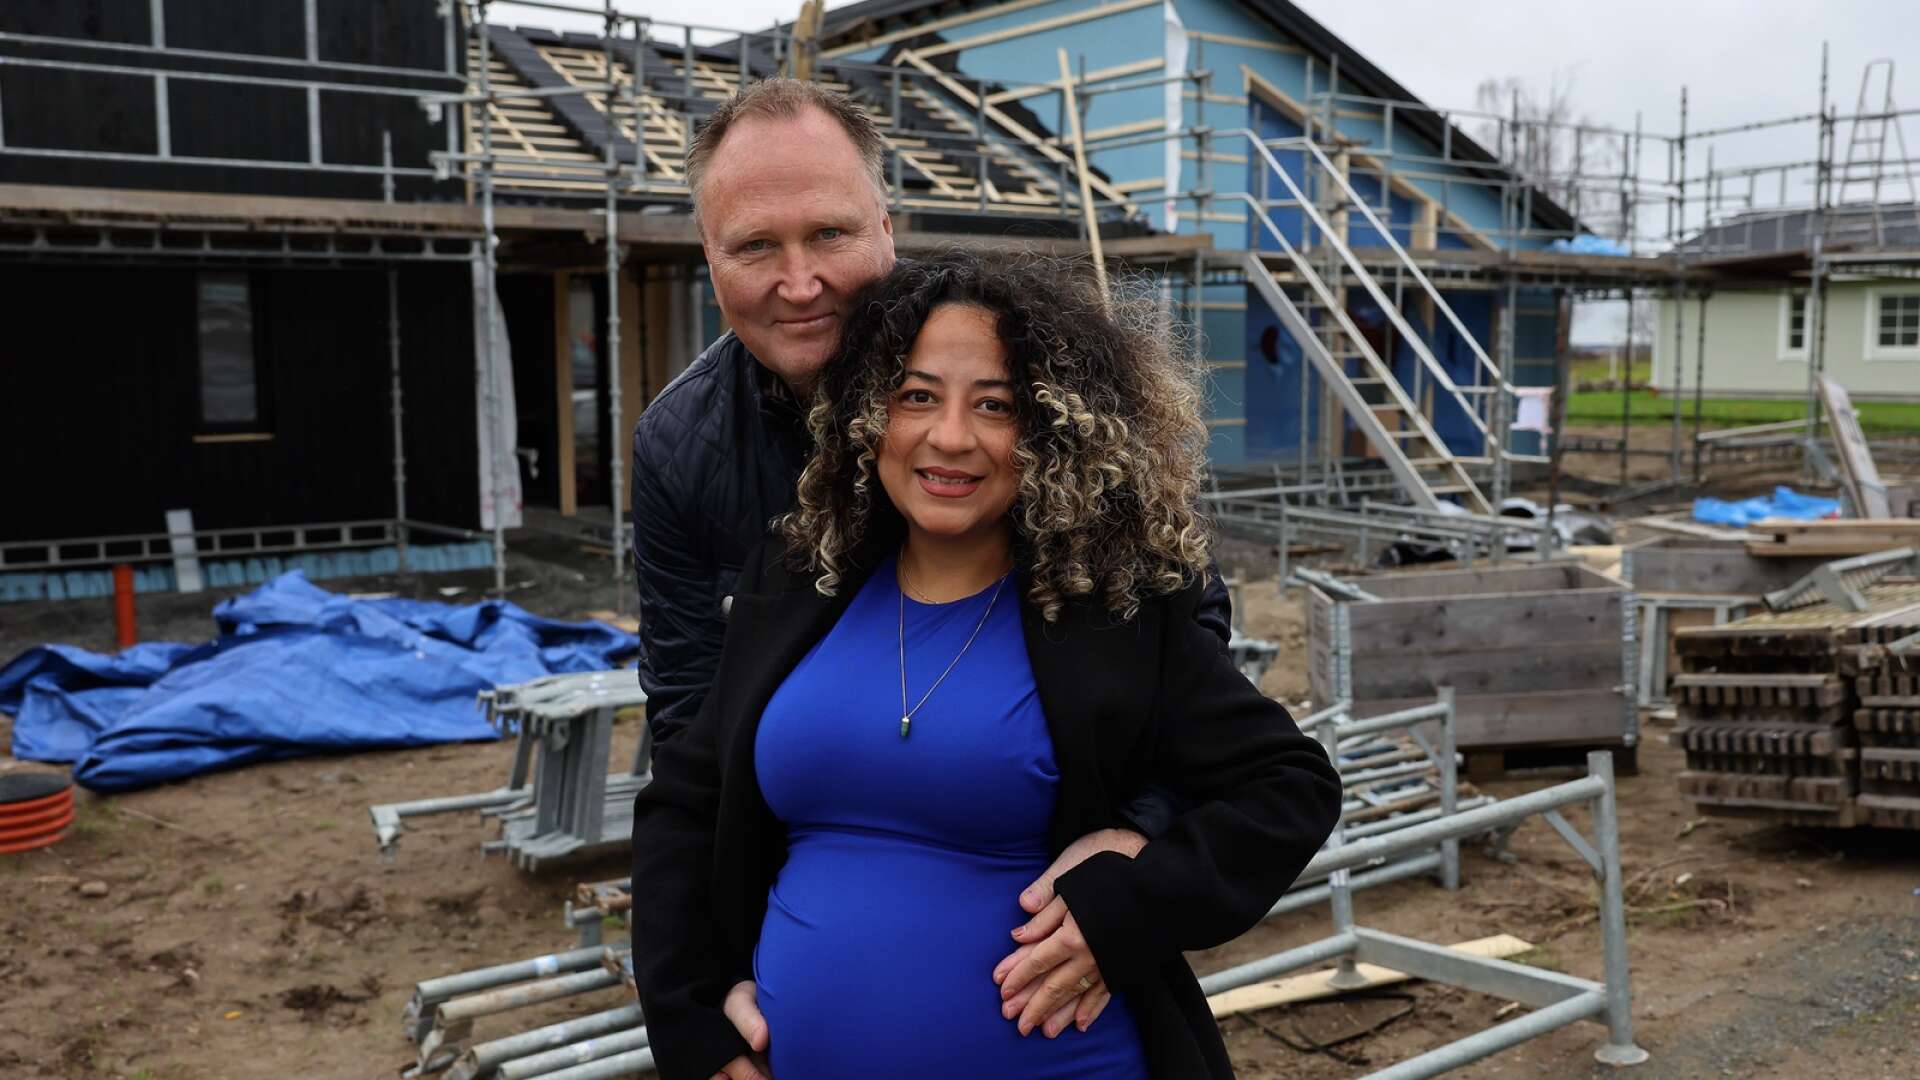 Roger och Fabiola Owebratt väntar barn och bygger hus i Mellby. De är 58, respektive 42 år gamla. För NLT berättar de om sin resa mot att få ett barn och om känslor kring att bli föräldrar senare i livet. 